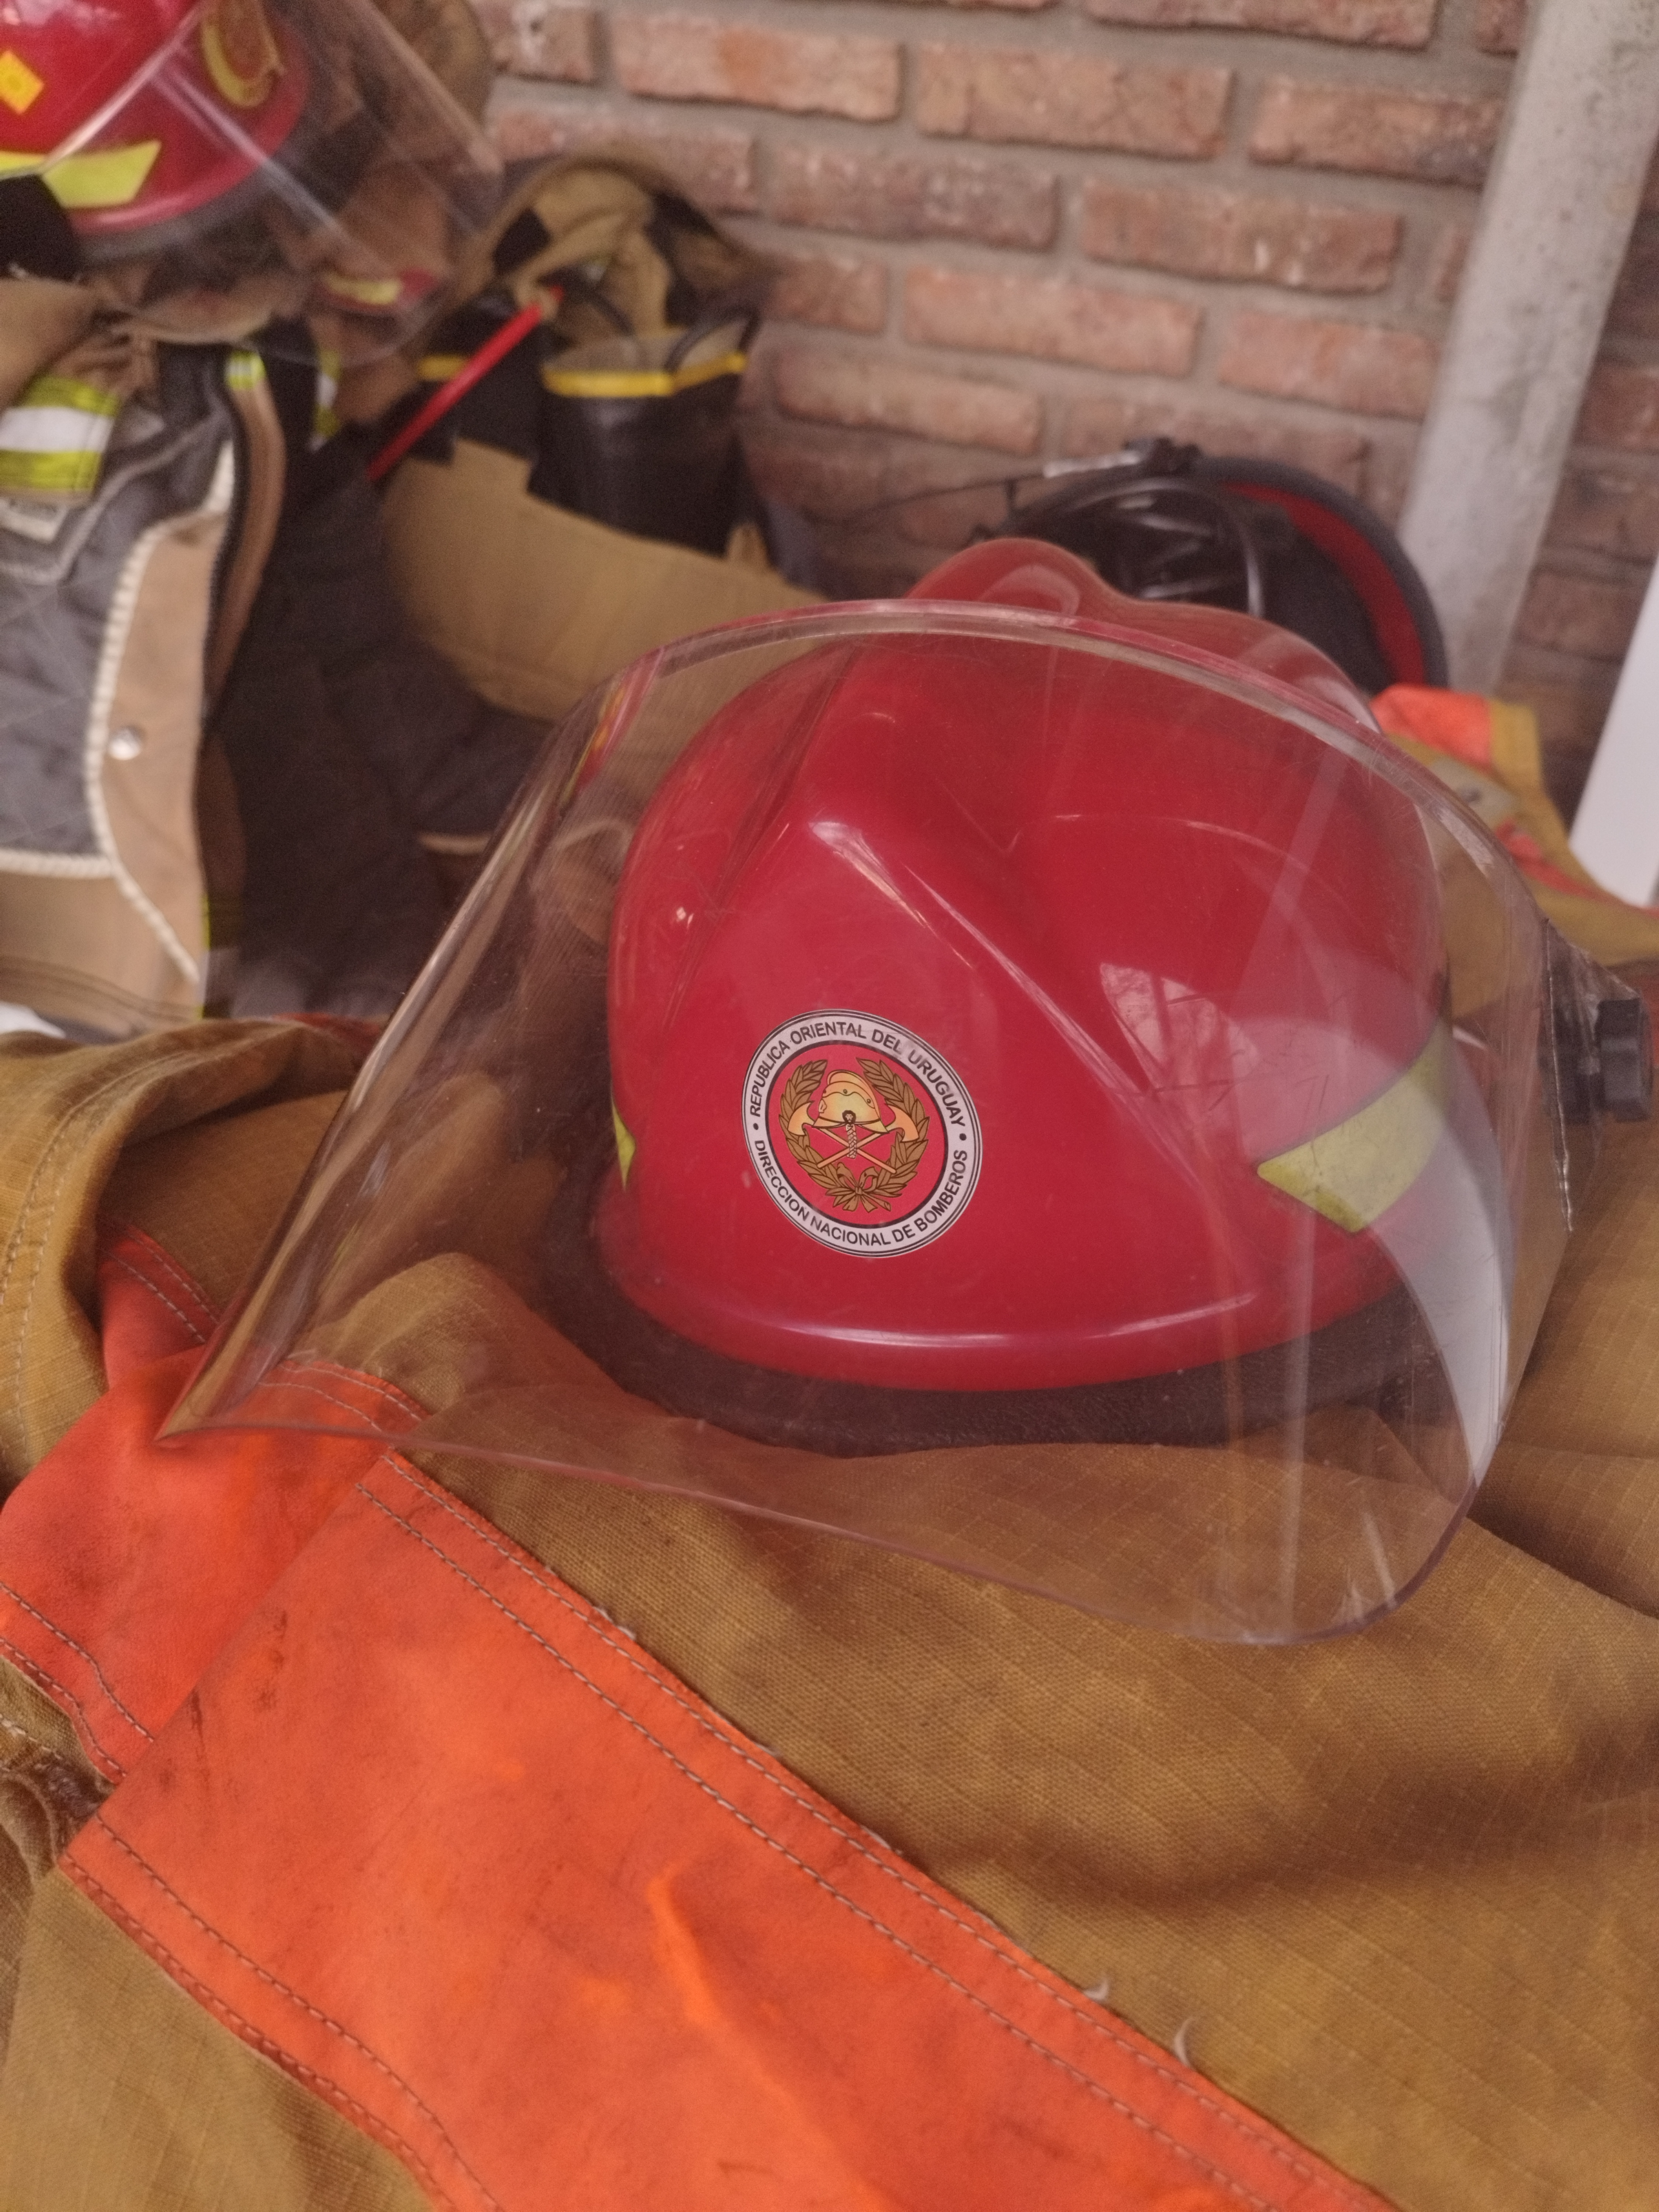 IMG_20230509_165941-fFDmrlui.jpg - El pasado jueves 11 de mayo culminó la &#034;Capacitación para bomberos sobre manejo de incidentes relacionados con la movilidad eléctrica&#034; en donde se capacitaron a 25 bomberos en la Base Aérea de Santa Bernardina del departamento de Durazno. Esta capacitación es la continuación del primer curso regional que organizó la plataforma MOVE del Programa de la Naciones Unidas para el Medio Ambiente a finales de 2022 en Paraguay, donde participaron y se formaron dos bomberos instructores de Uruguay.